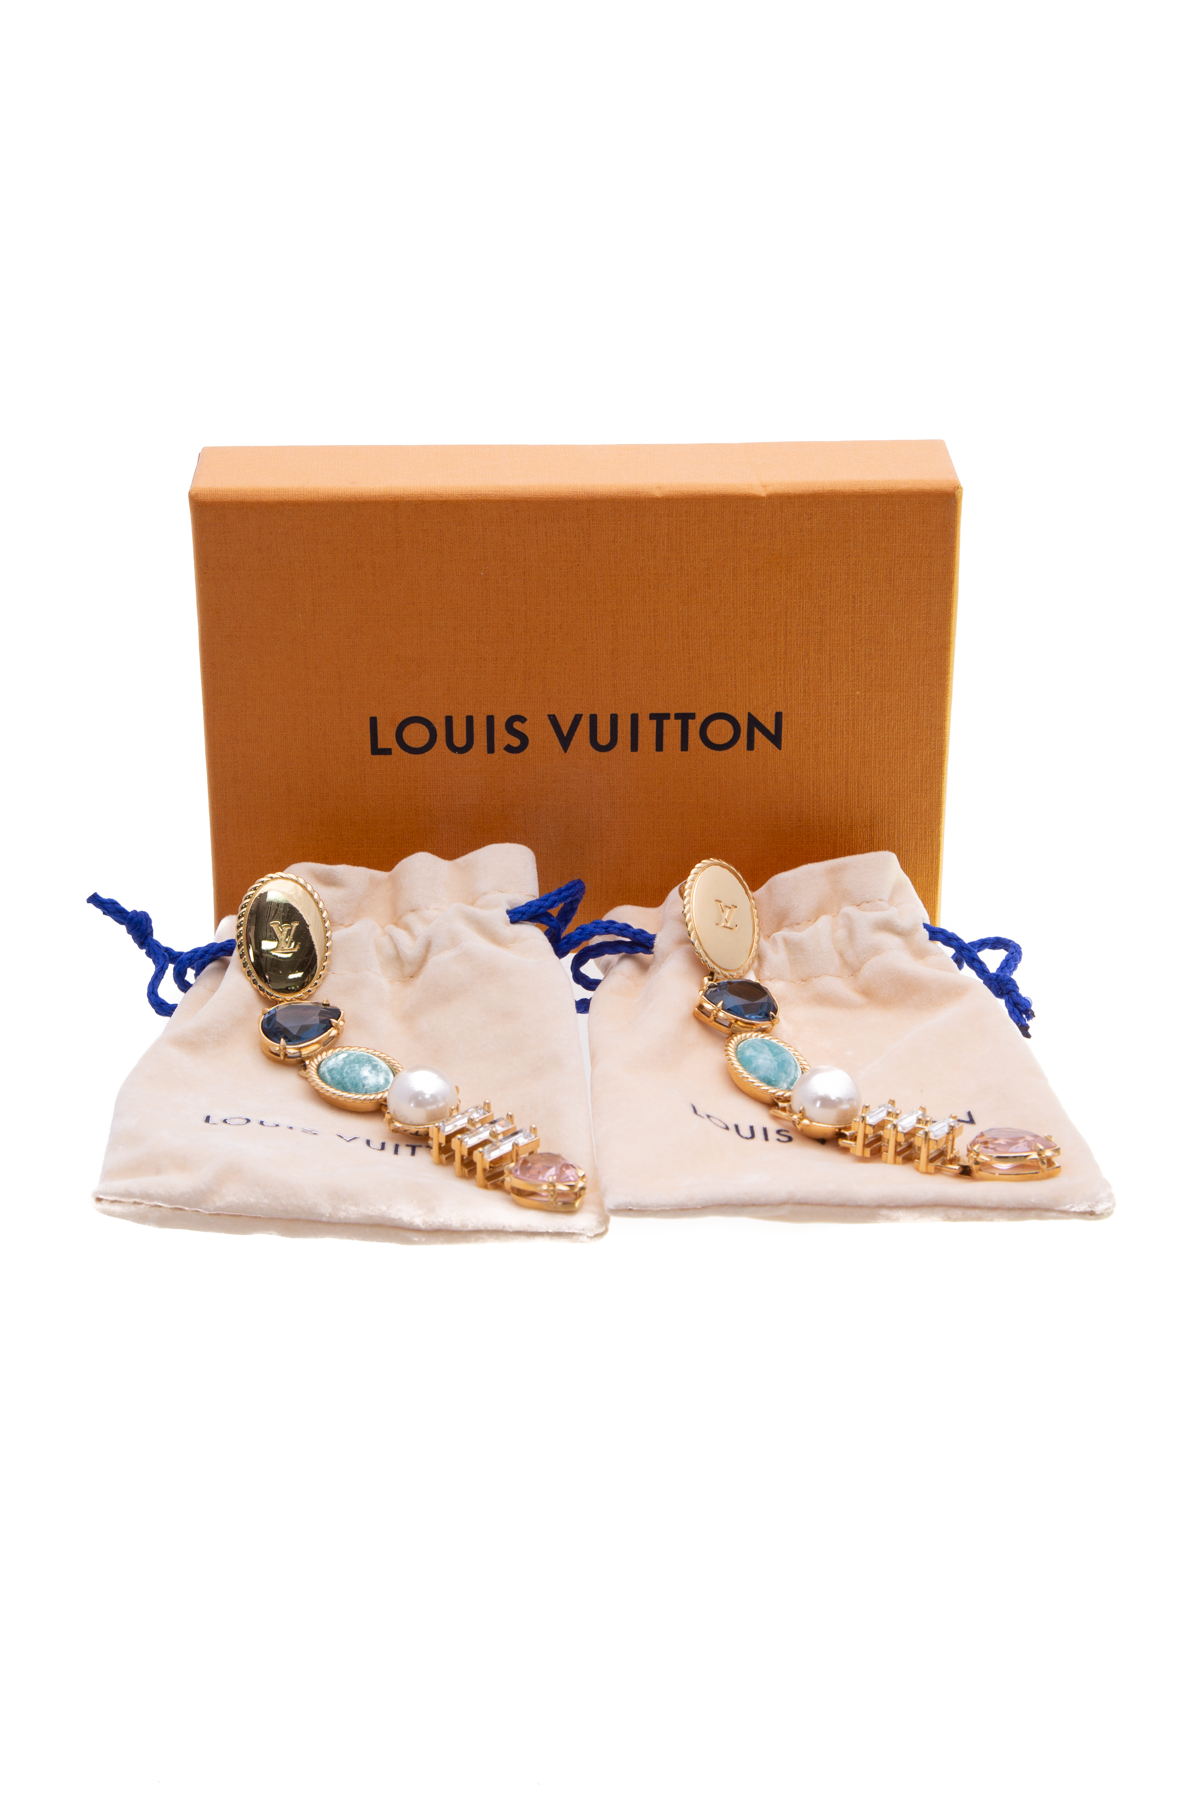 Louis Vuitton, Jewelry, Louis Vuitton Earrings